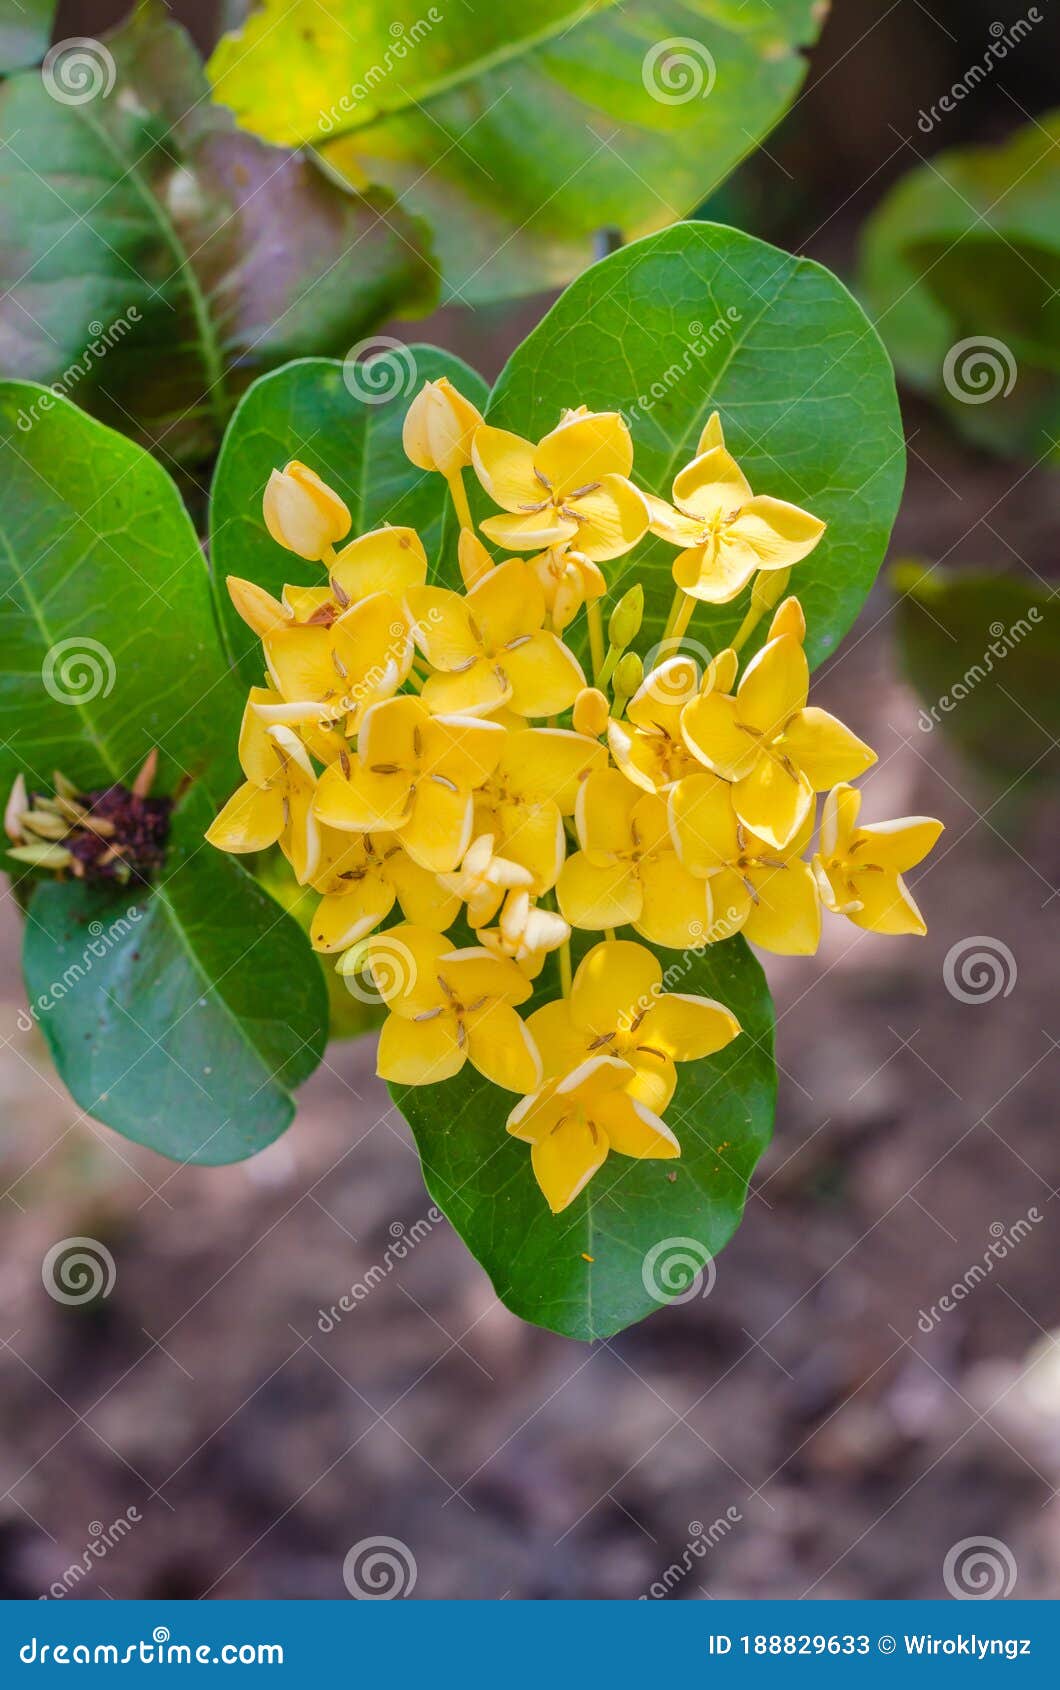 Flor De Agulha Amarela Ou Designação Botânica é Ixora Coccinea Florescente.  Imagem de Stock - Imagem de botânica, planta: 188829633